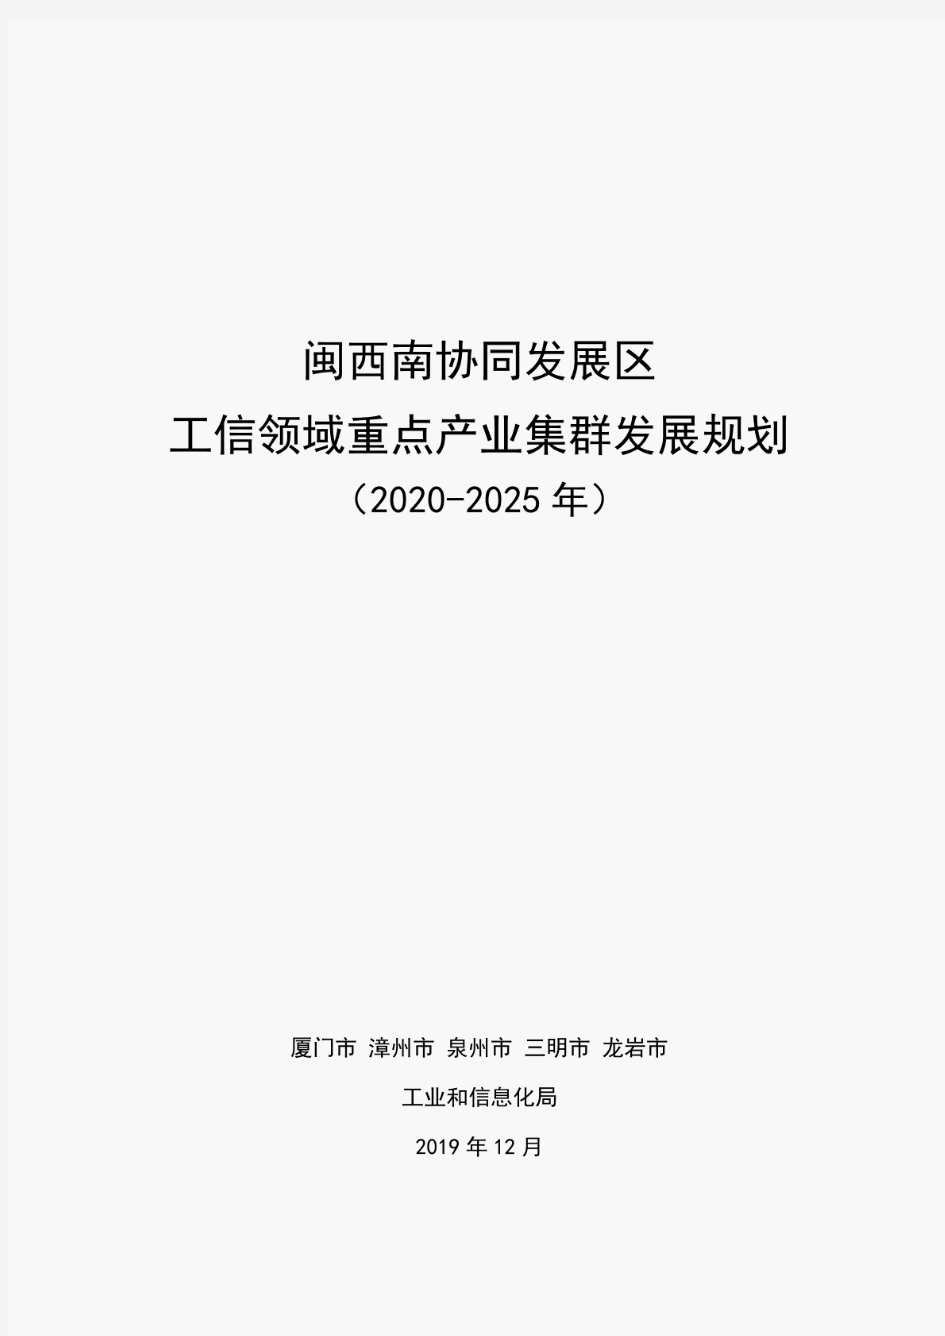 闽西南协同发展区 工信领域重点产业集群发展规划(2020-2025)